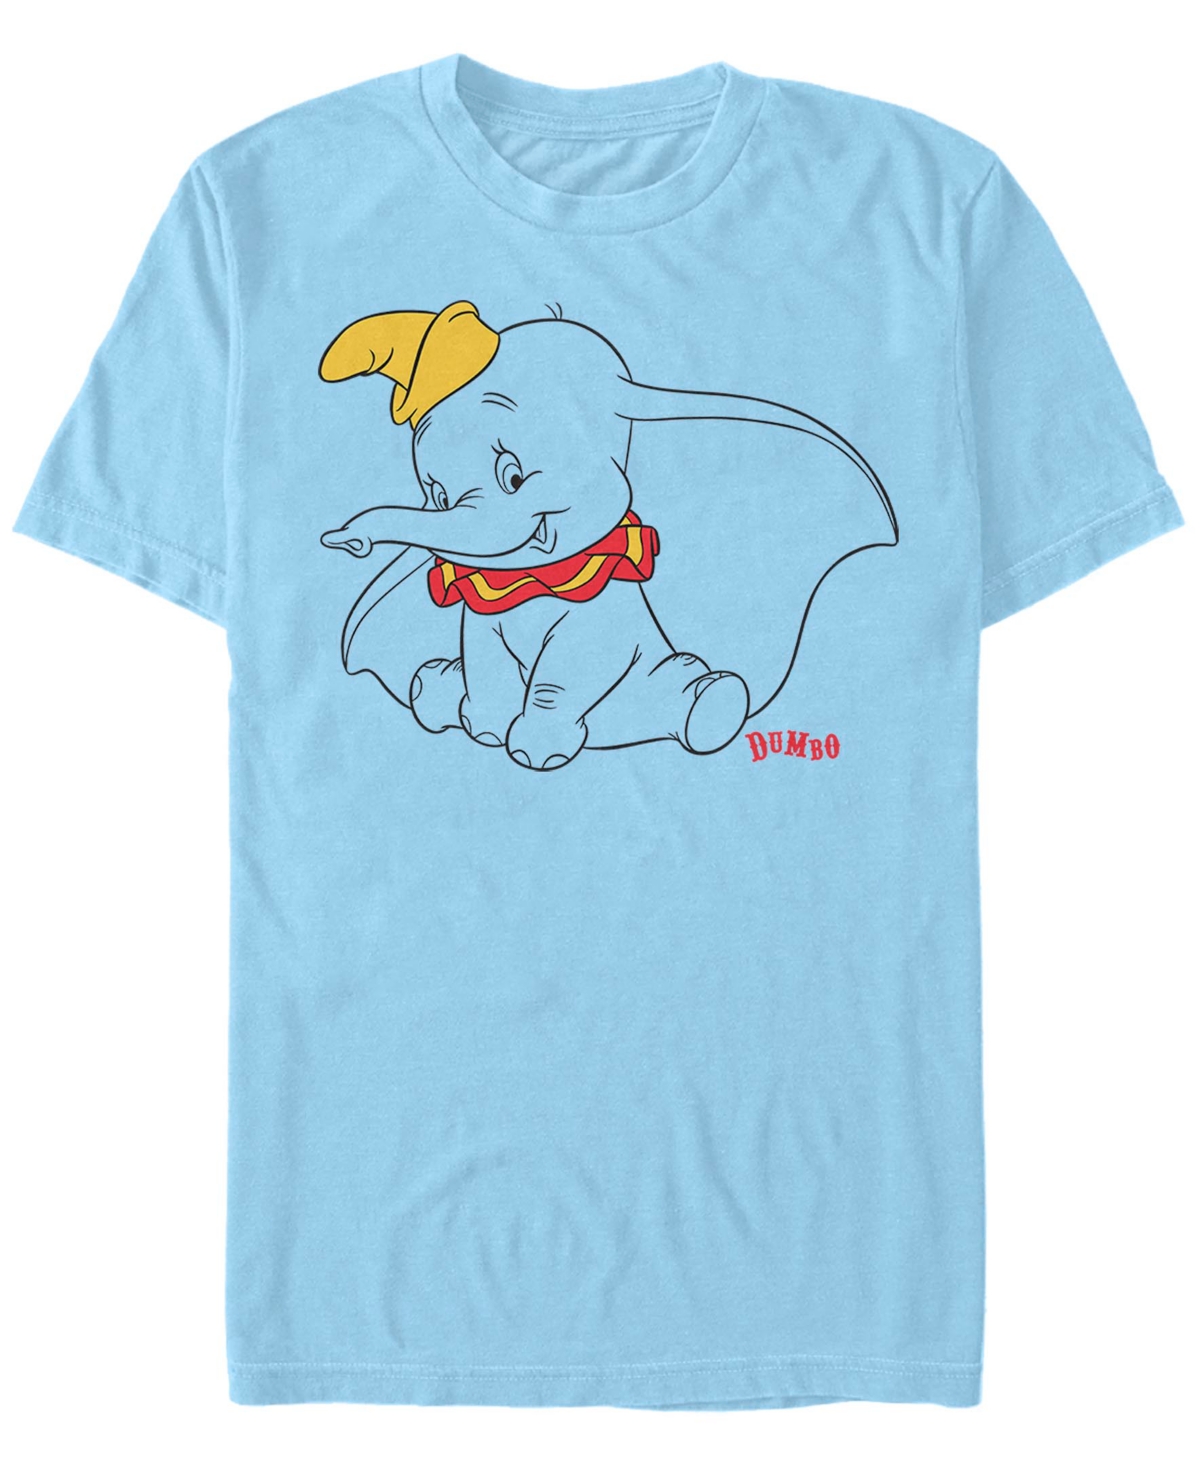 Fifth Sun Men's Kts Dumbo Short Sleeve T-Shirt